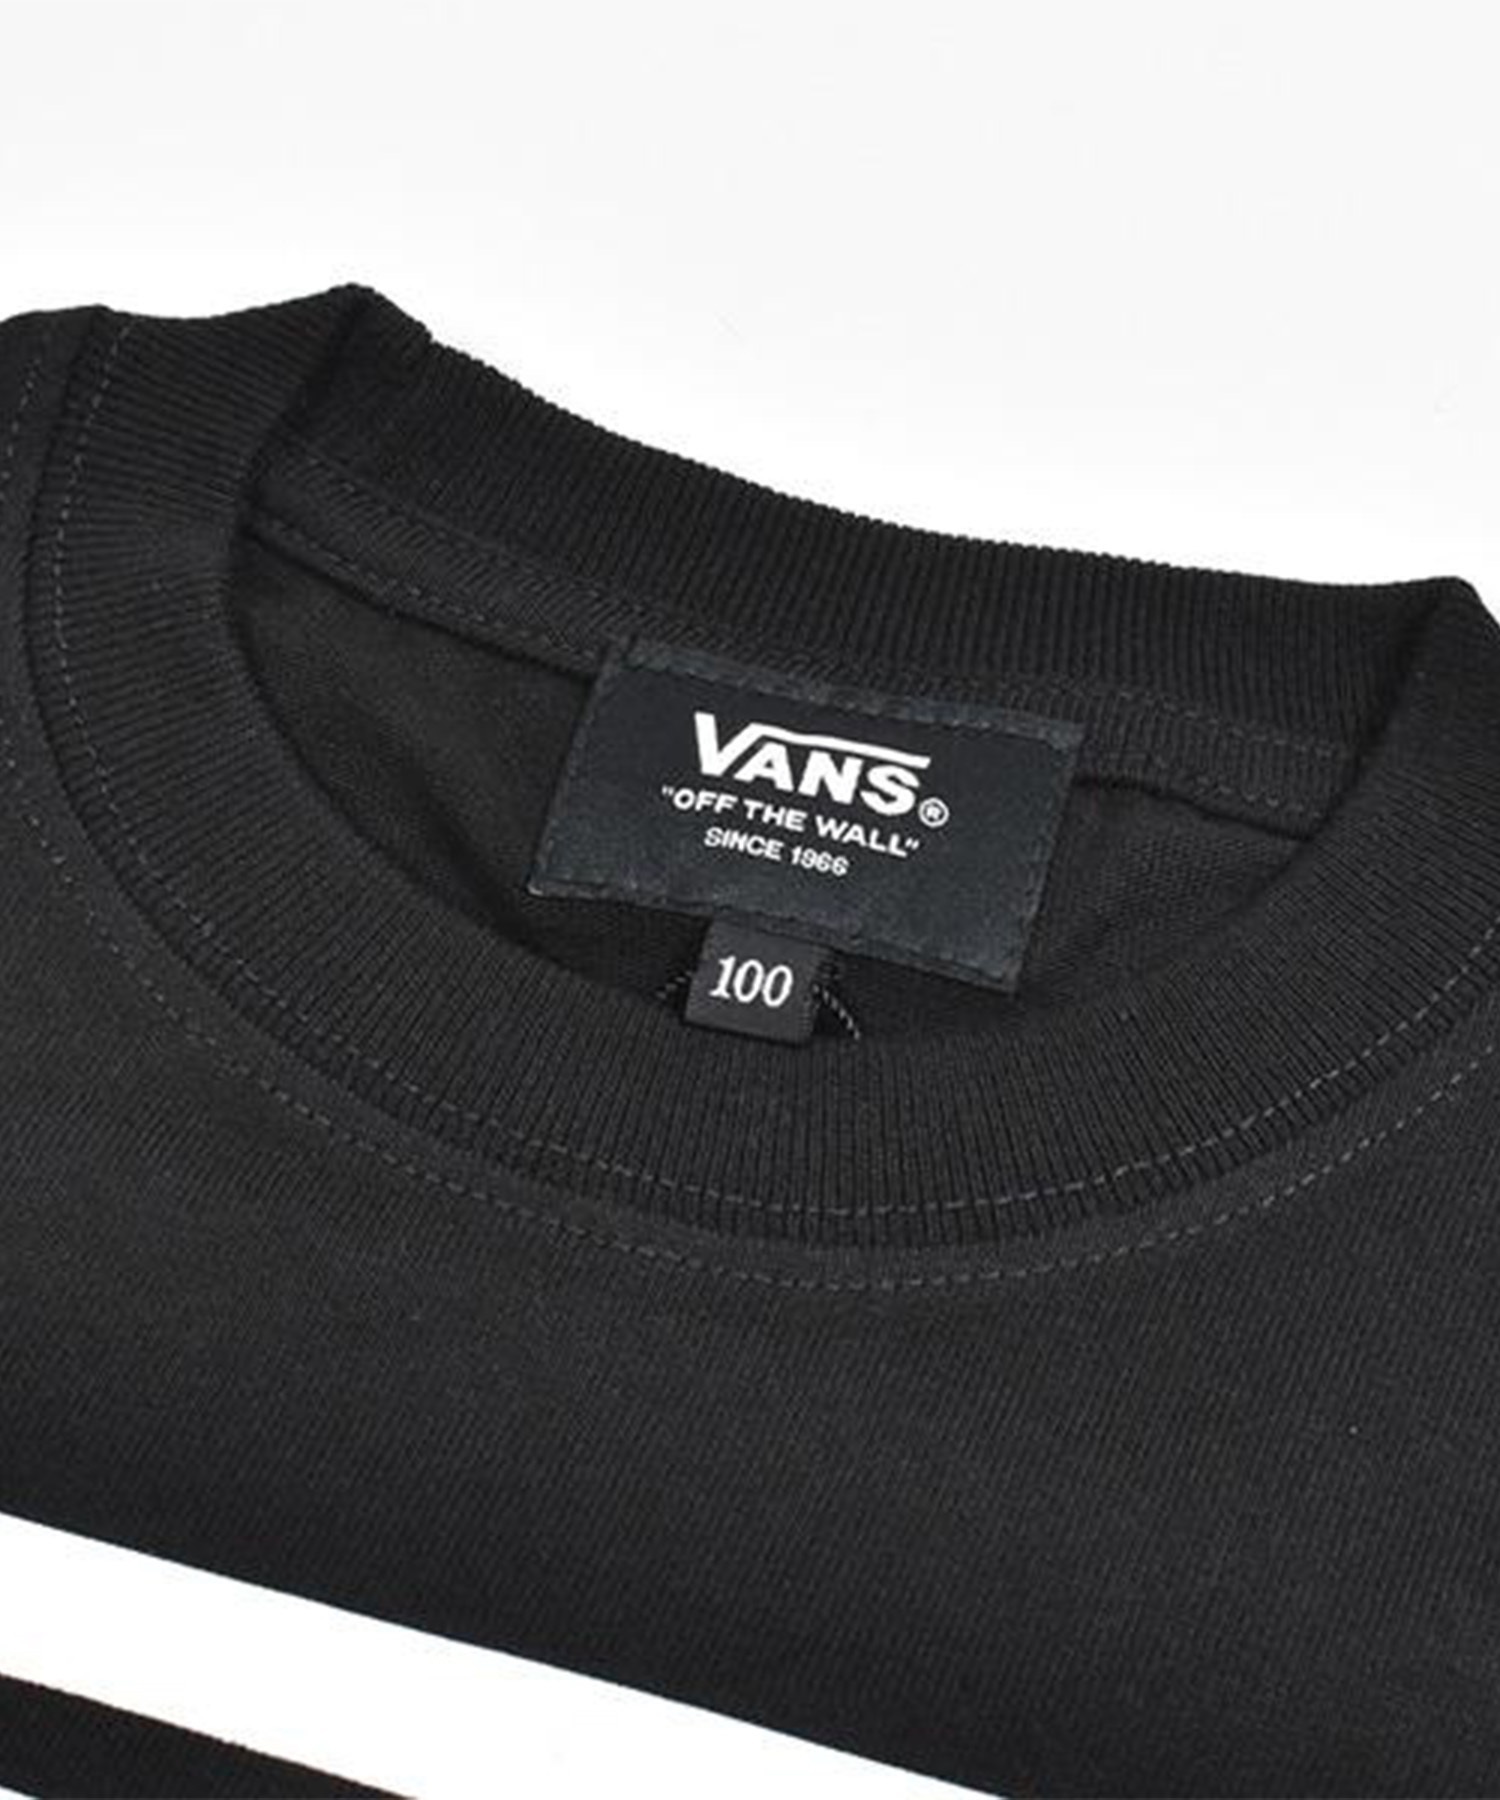 VANS バンズ キッズ 半袖 Tシャツ ロゴ 定番 VANS-KT01(WT/BK-100cm)